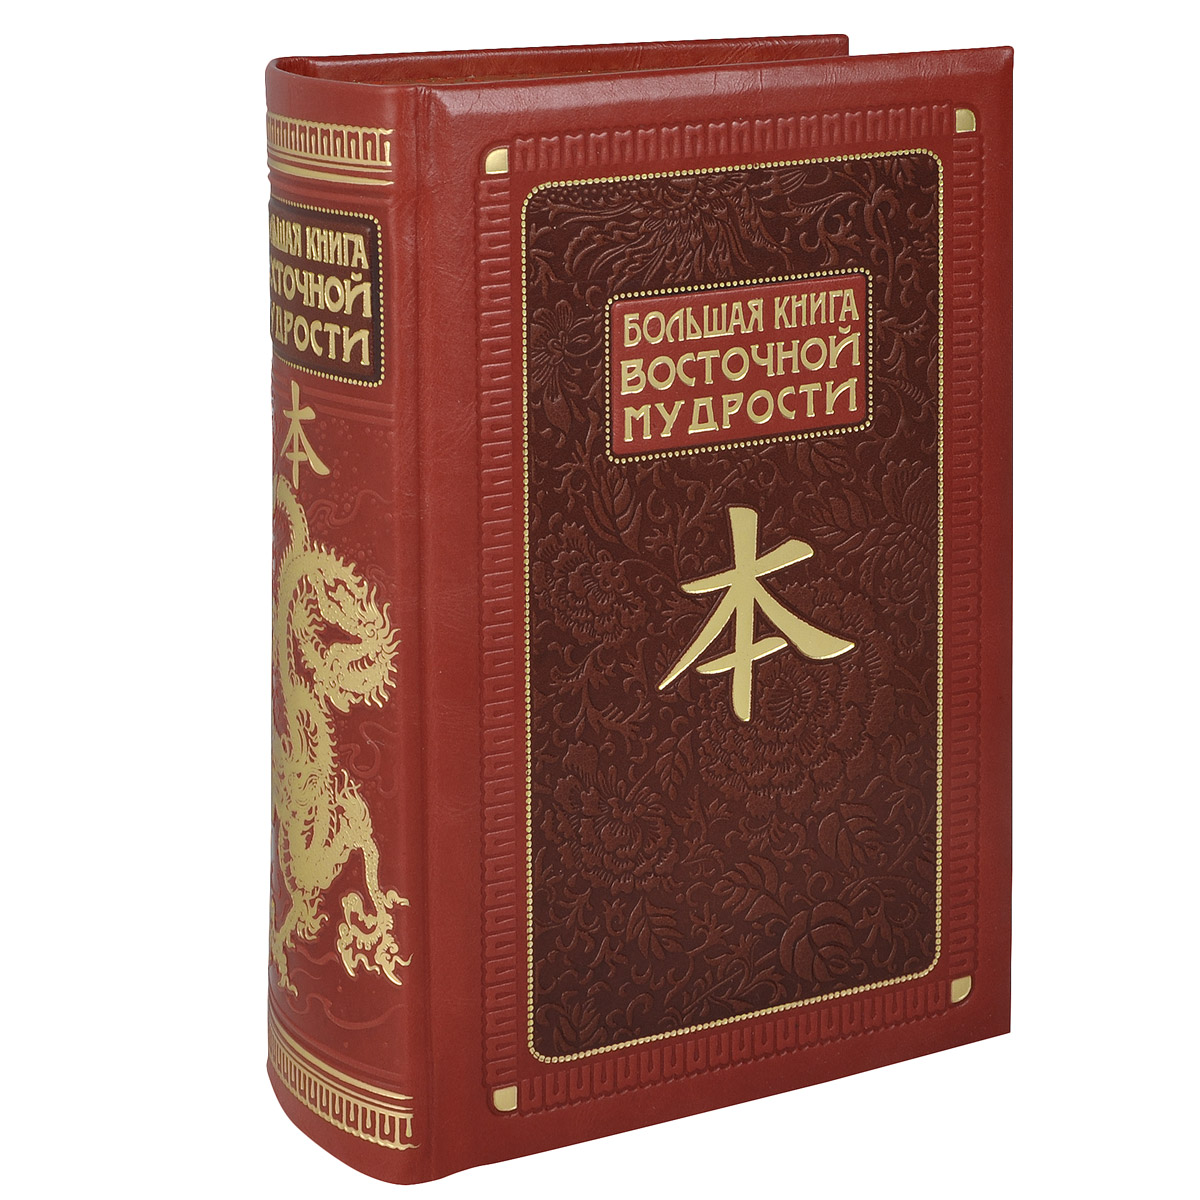 Большая книга Восточной мудрости (эксклюзивное подарочное издание)